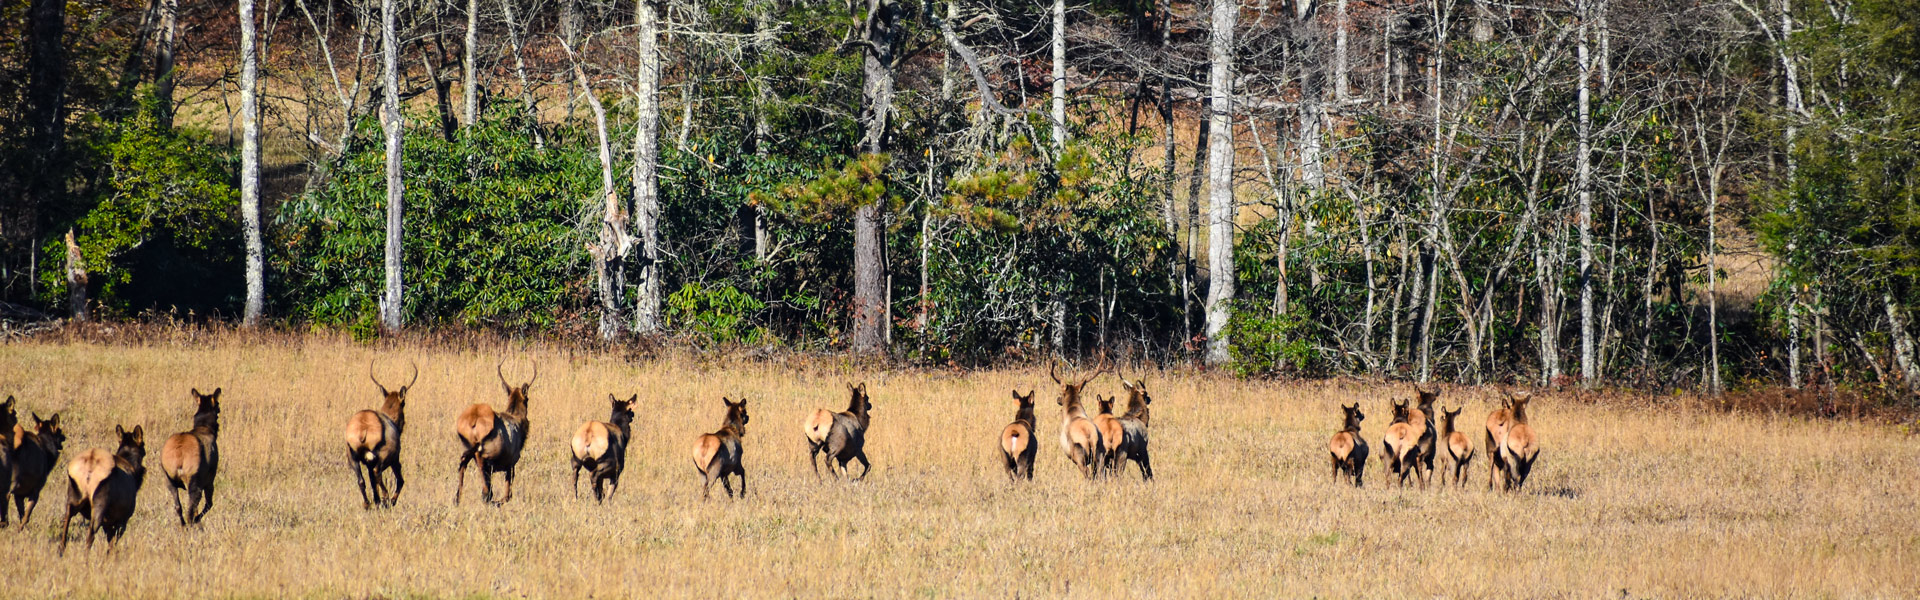 Herd of elk